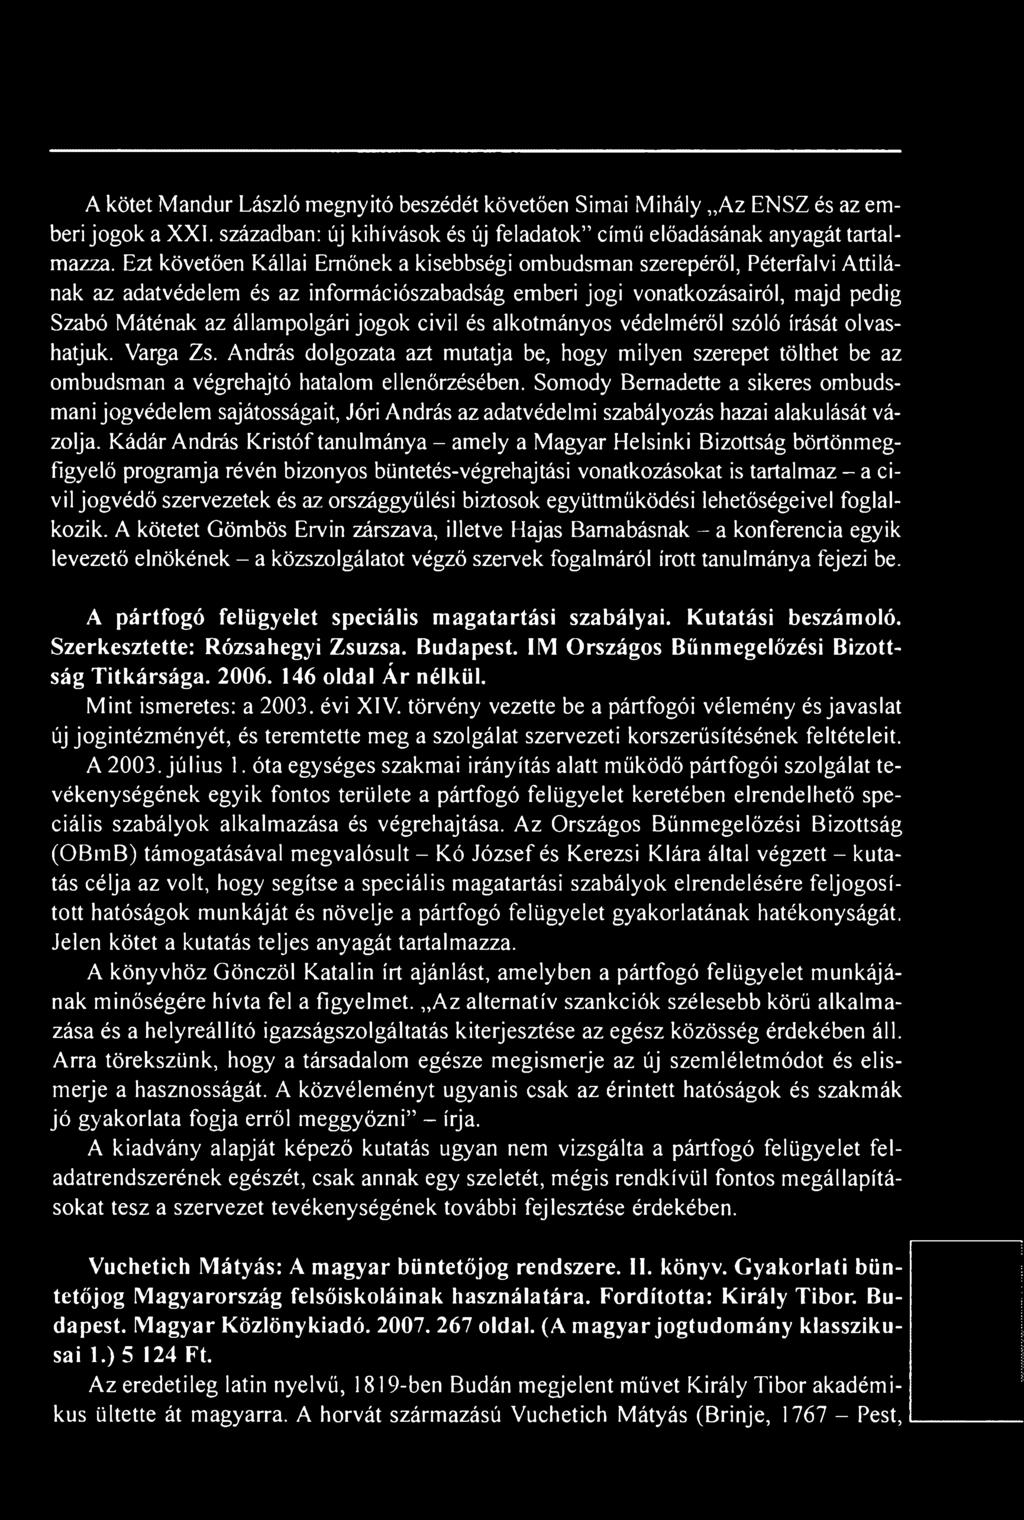 Kádár András Kristóf tanulmánya - amely a Magyar Helsinki Bizottság börtönmegfigyelő programja révén bizonyos büntetés-végrehajtási vonatkozásokat is tartalmaz - a civil jogvédő szervezetek és az